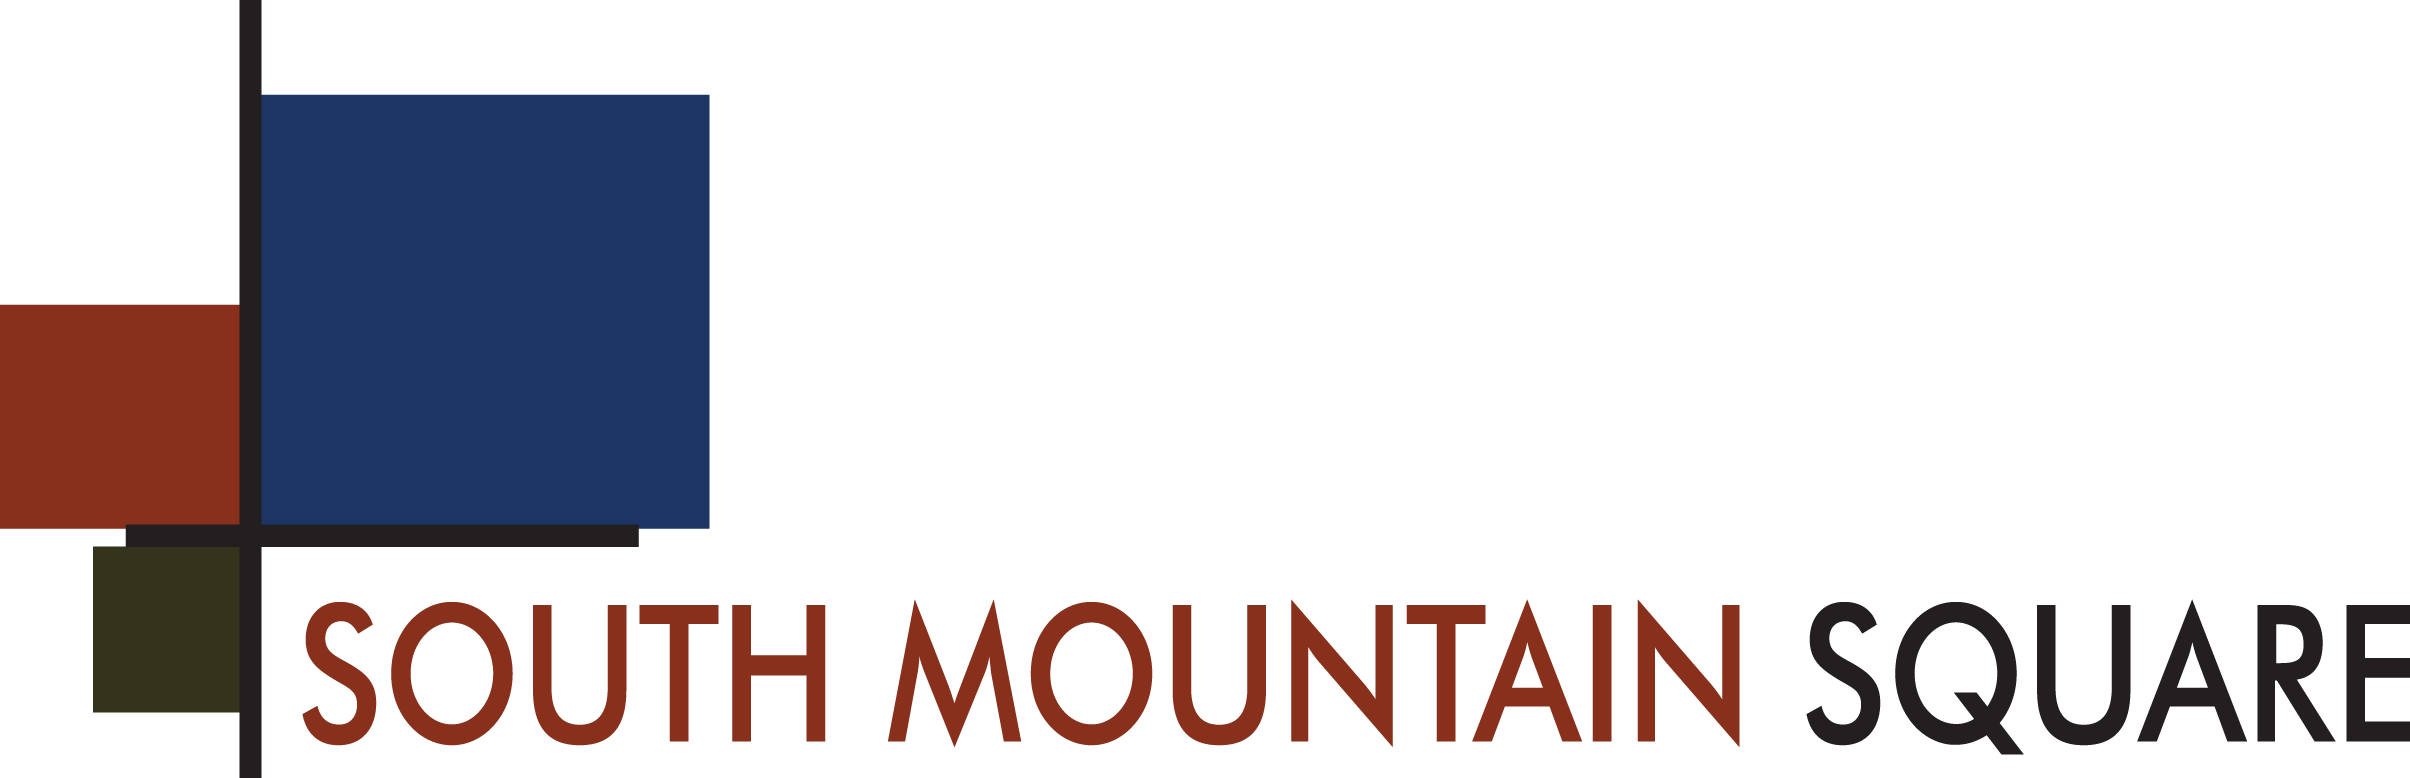 South Mountain Logo - South Mountain Square - Phoenix Arizona Apartments